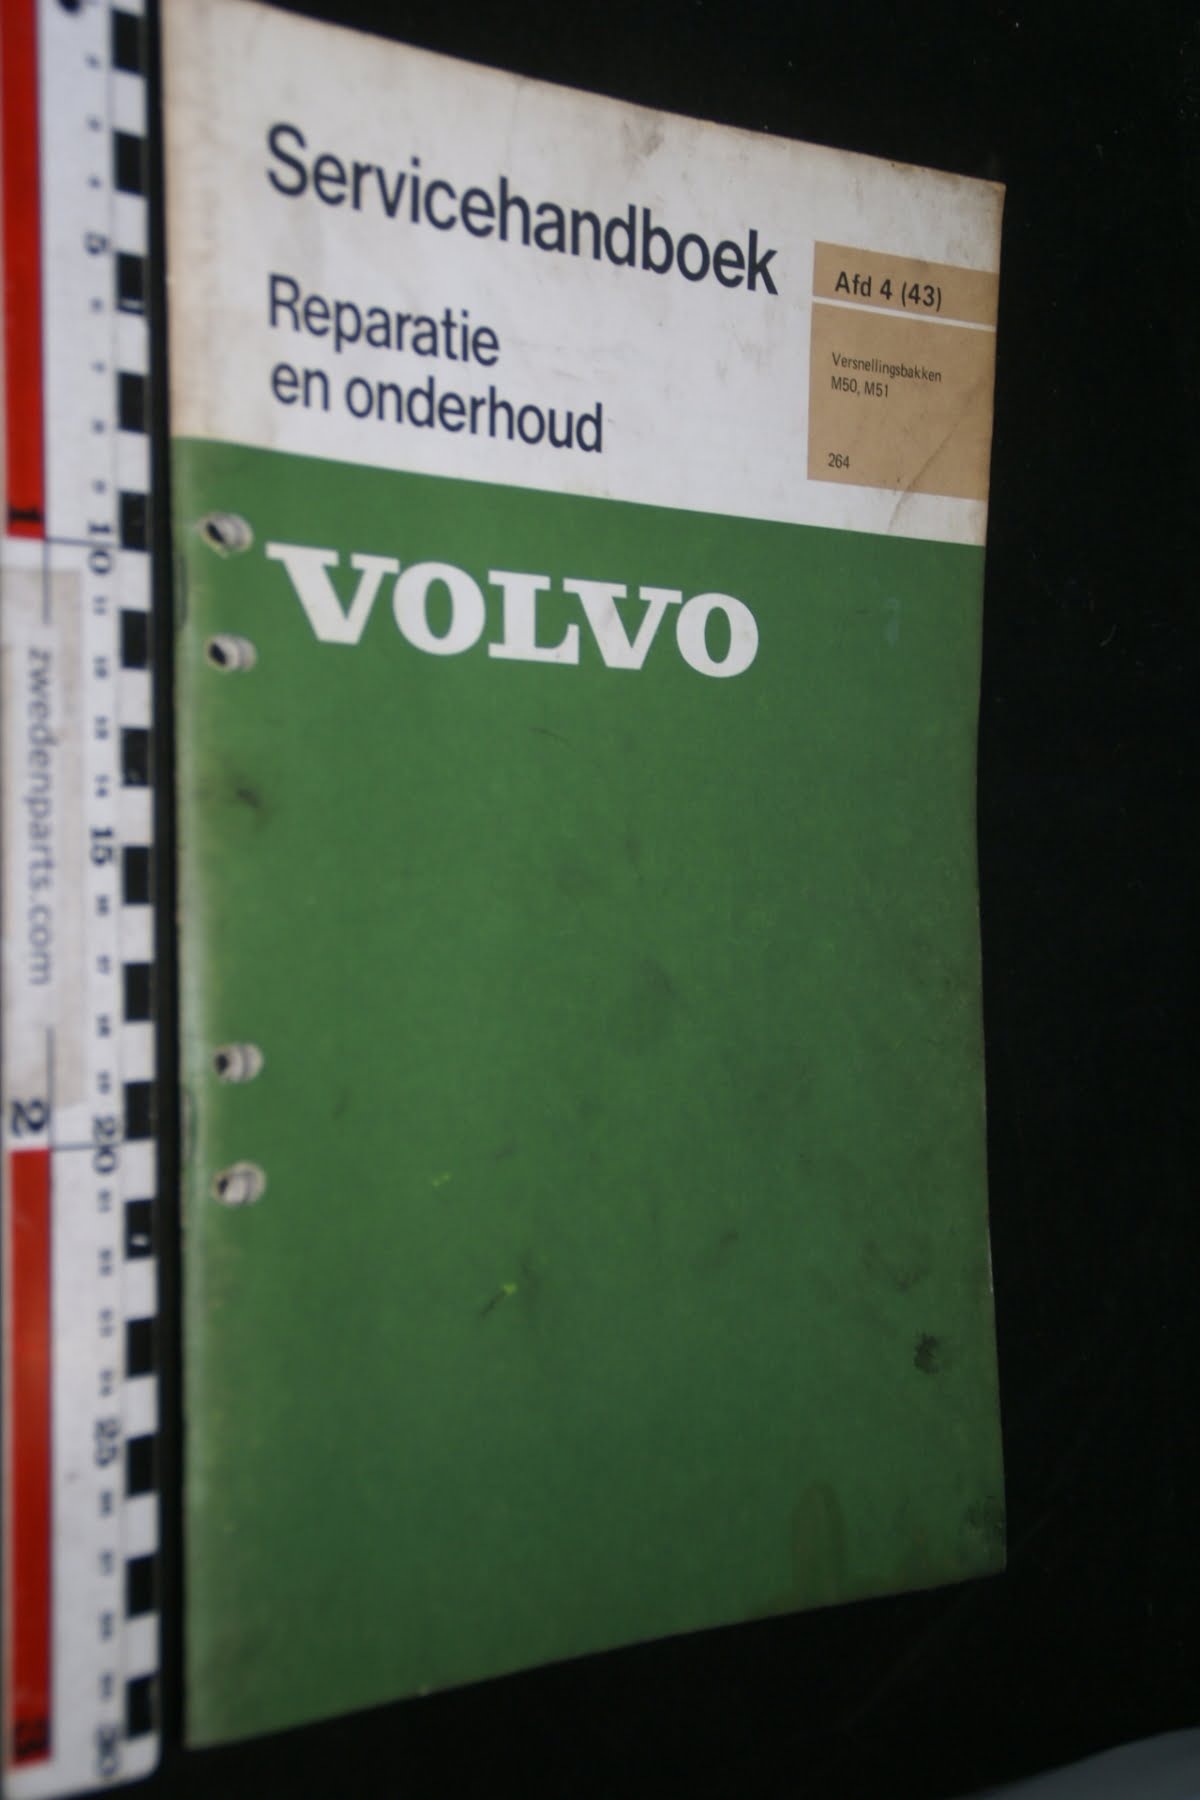 DSC02916 1975 serviceboek 4(43) versnellingsbak M50 M51 origineel Volvo 264, 1 van 500 nr TP 10991-1-63609626